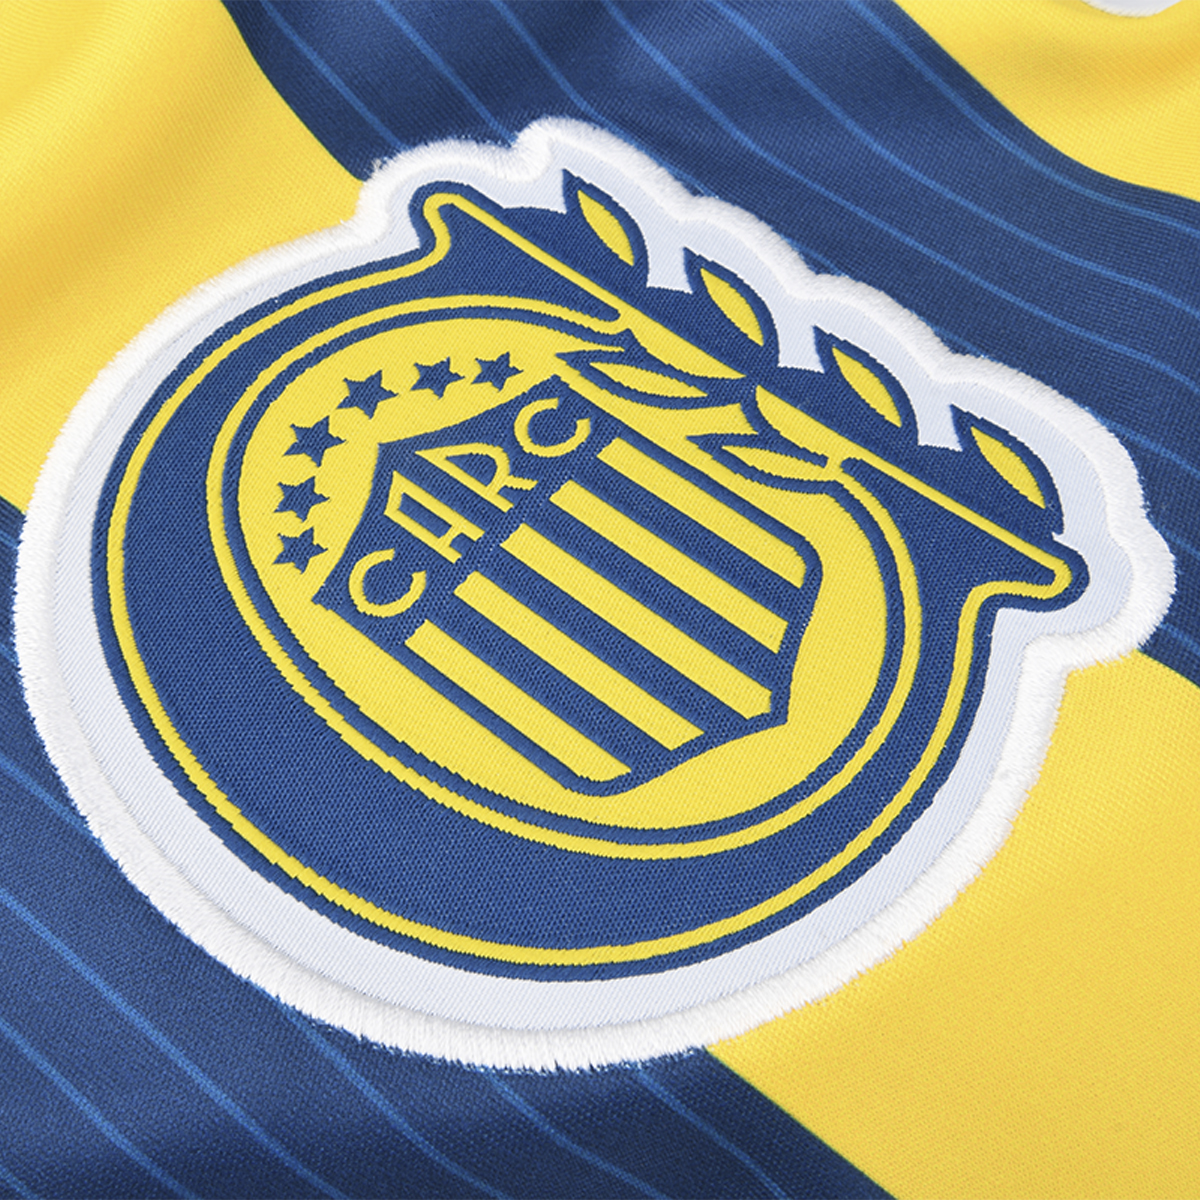 Camiseta Umbro Club Atlético Rosario Central Oficial Unisex,  image number null